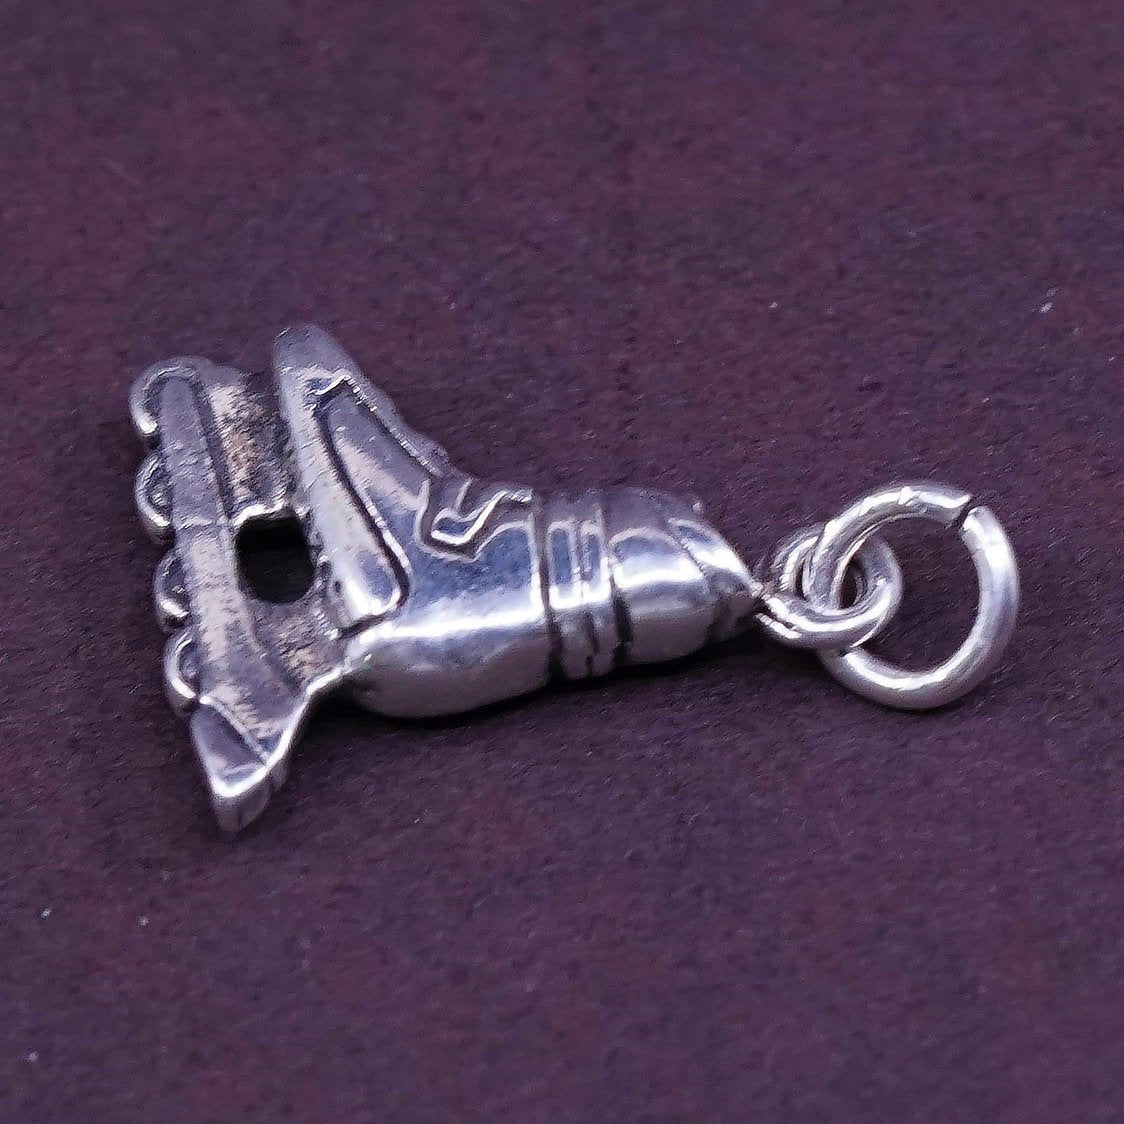 vtg Sterling silver handmade pendant, 925 ice skate shoe charm